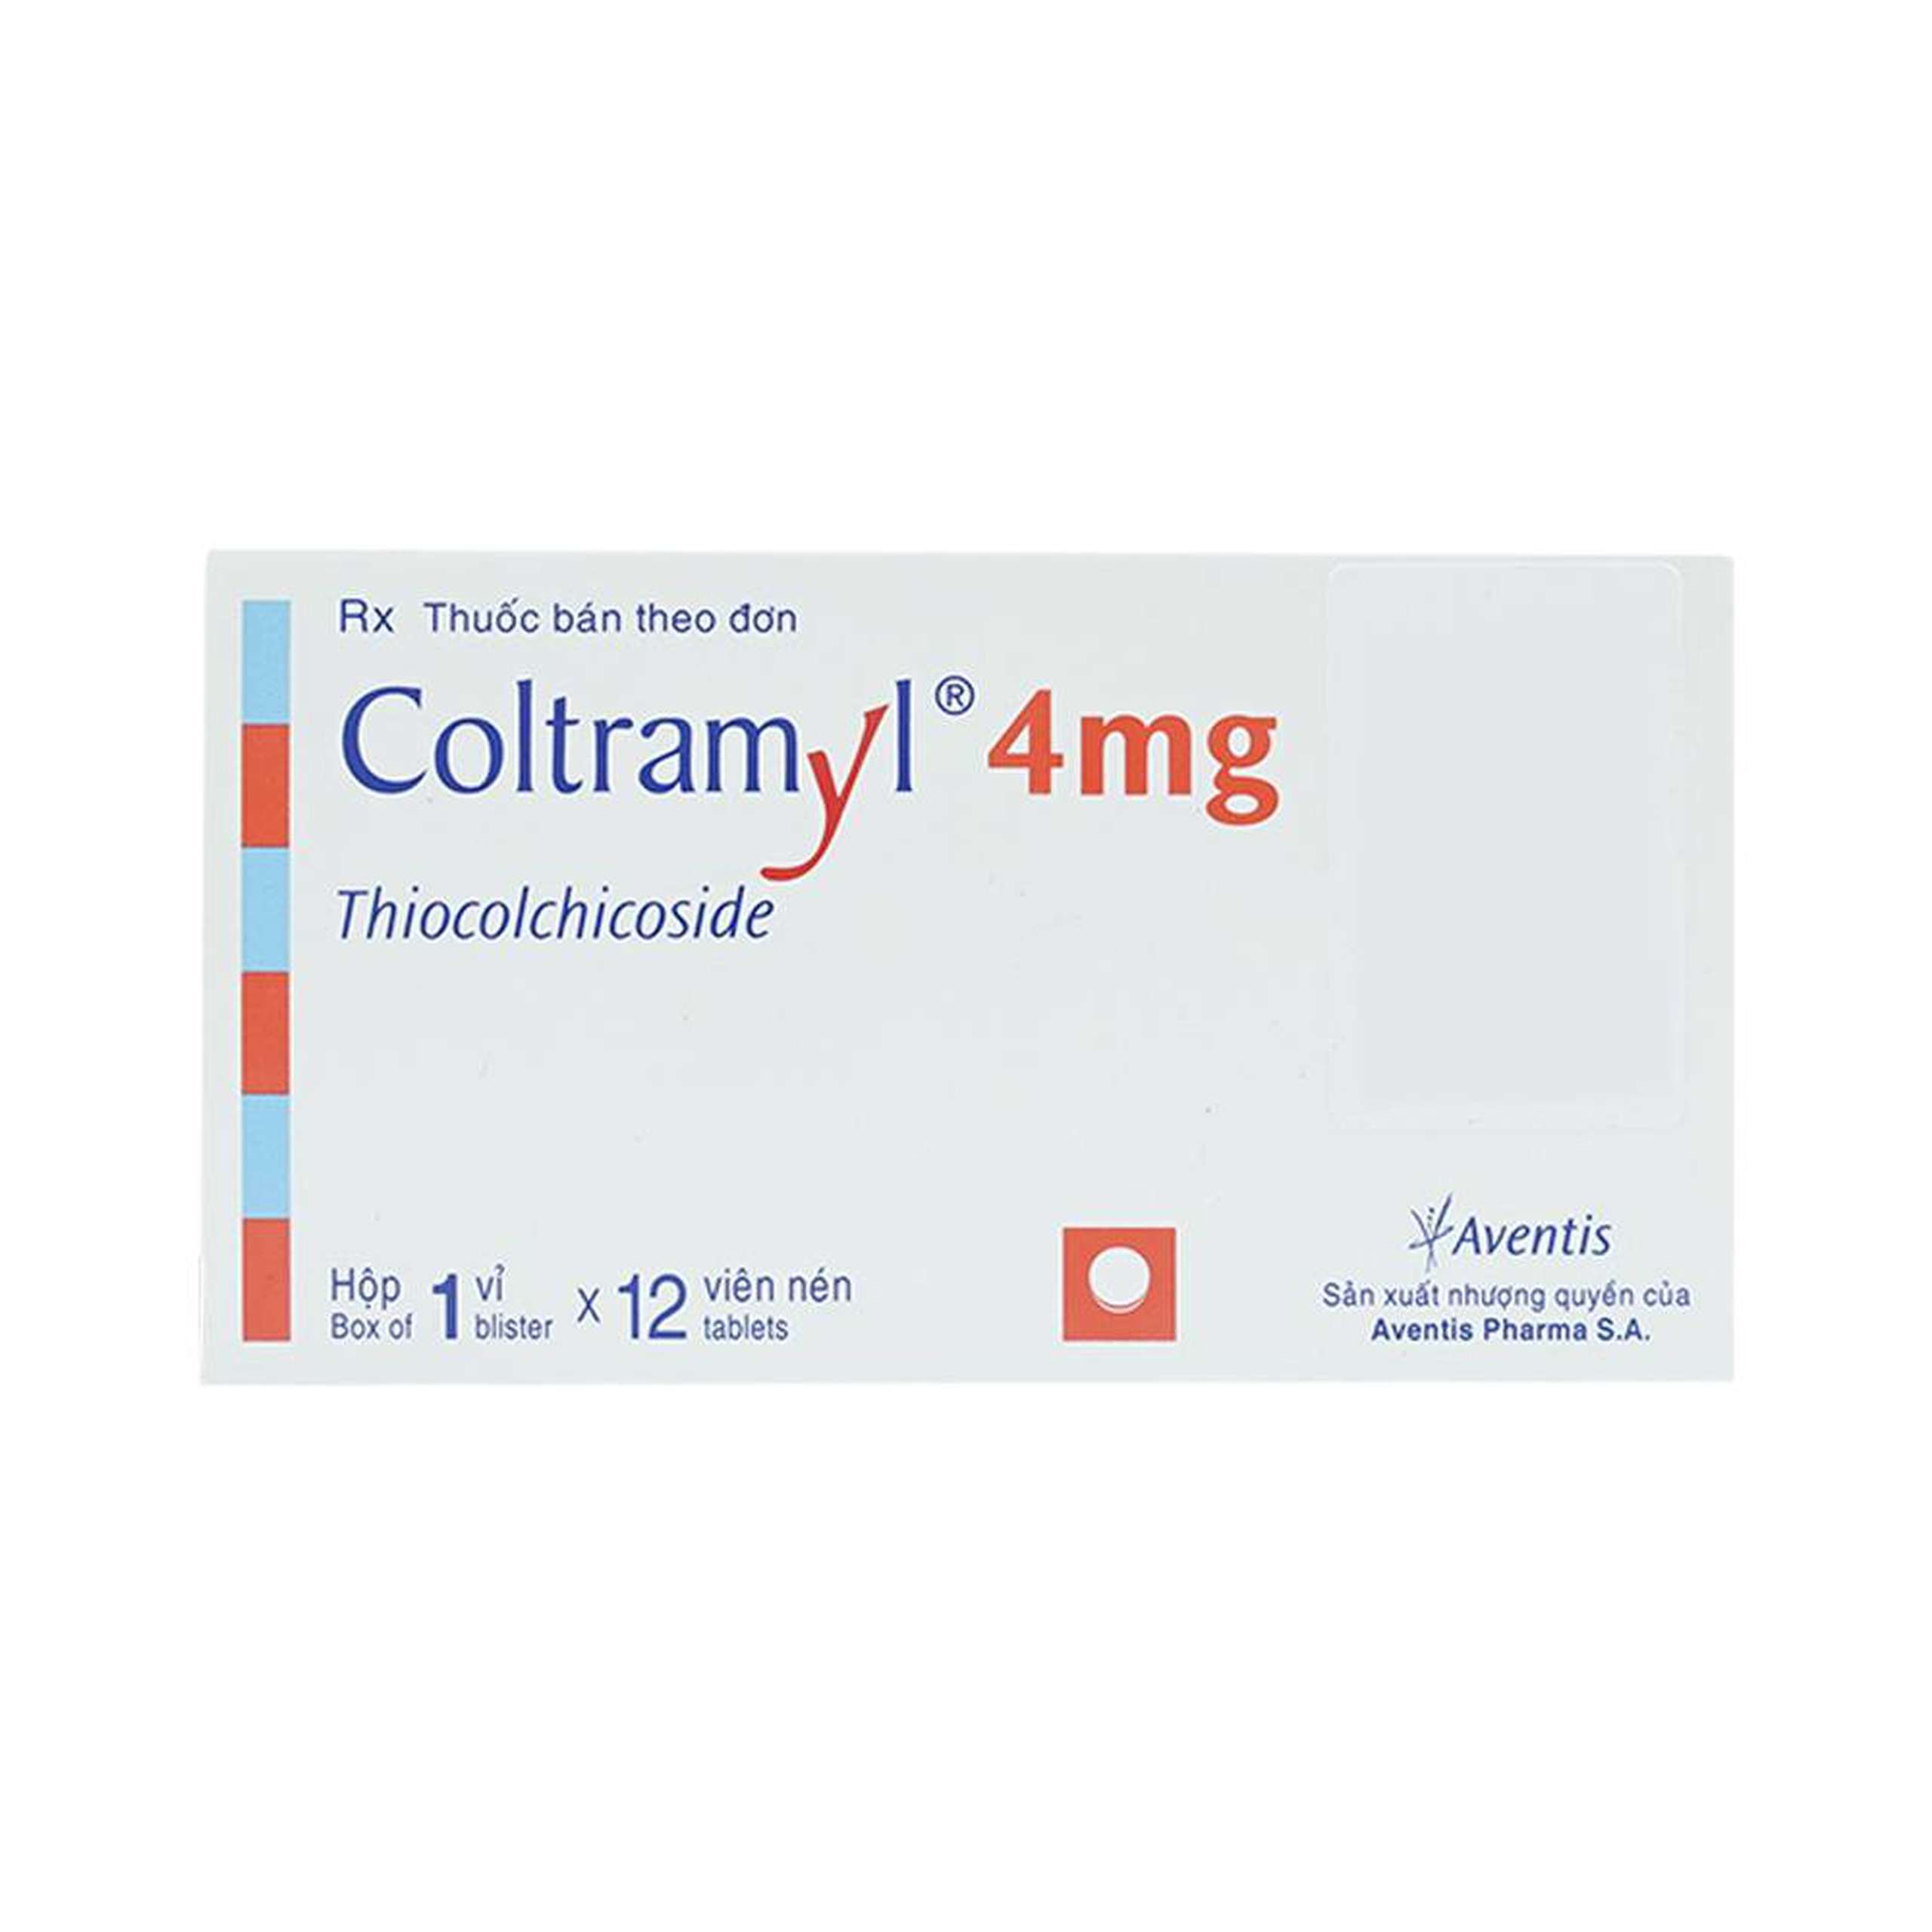 Thuốc Coltramyl 4mg Roussel điều trị hỗ trợ đau do co cứng cơ bắp cấp tính (1 vỉ x 12 viên)